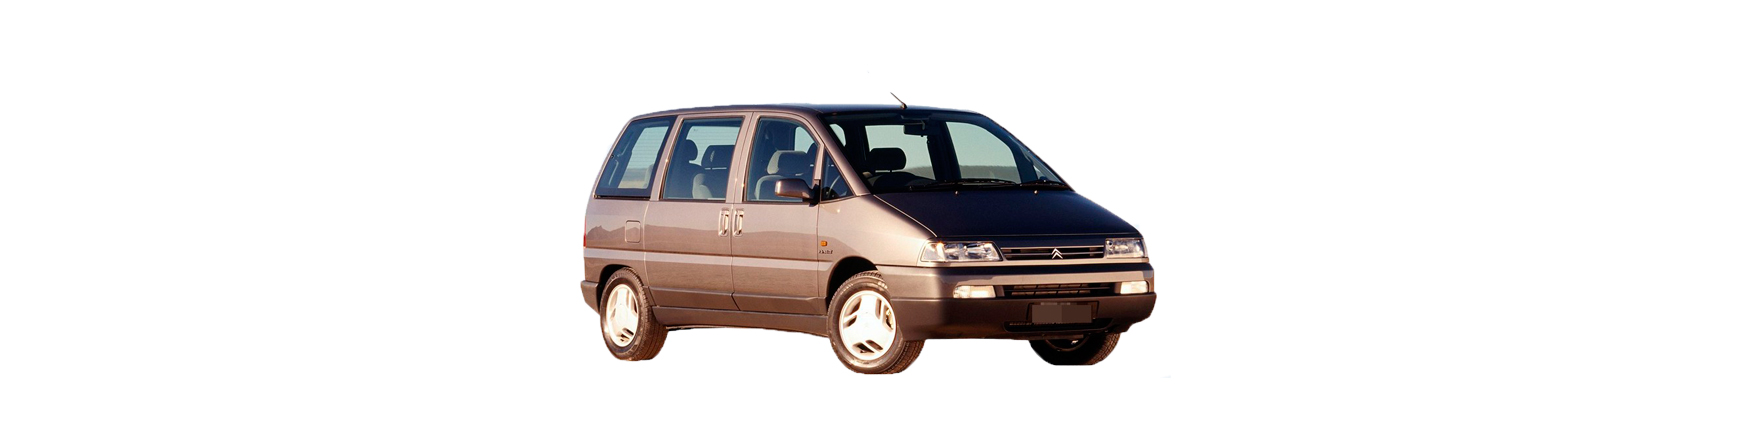 Recambios de Citroën Evasión de 1994 a 2002. Calidad al mejor precio.